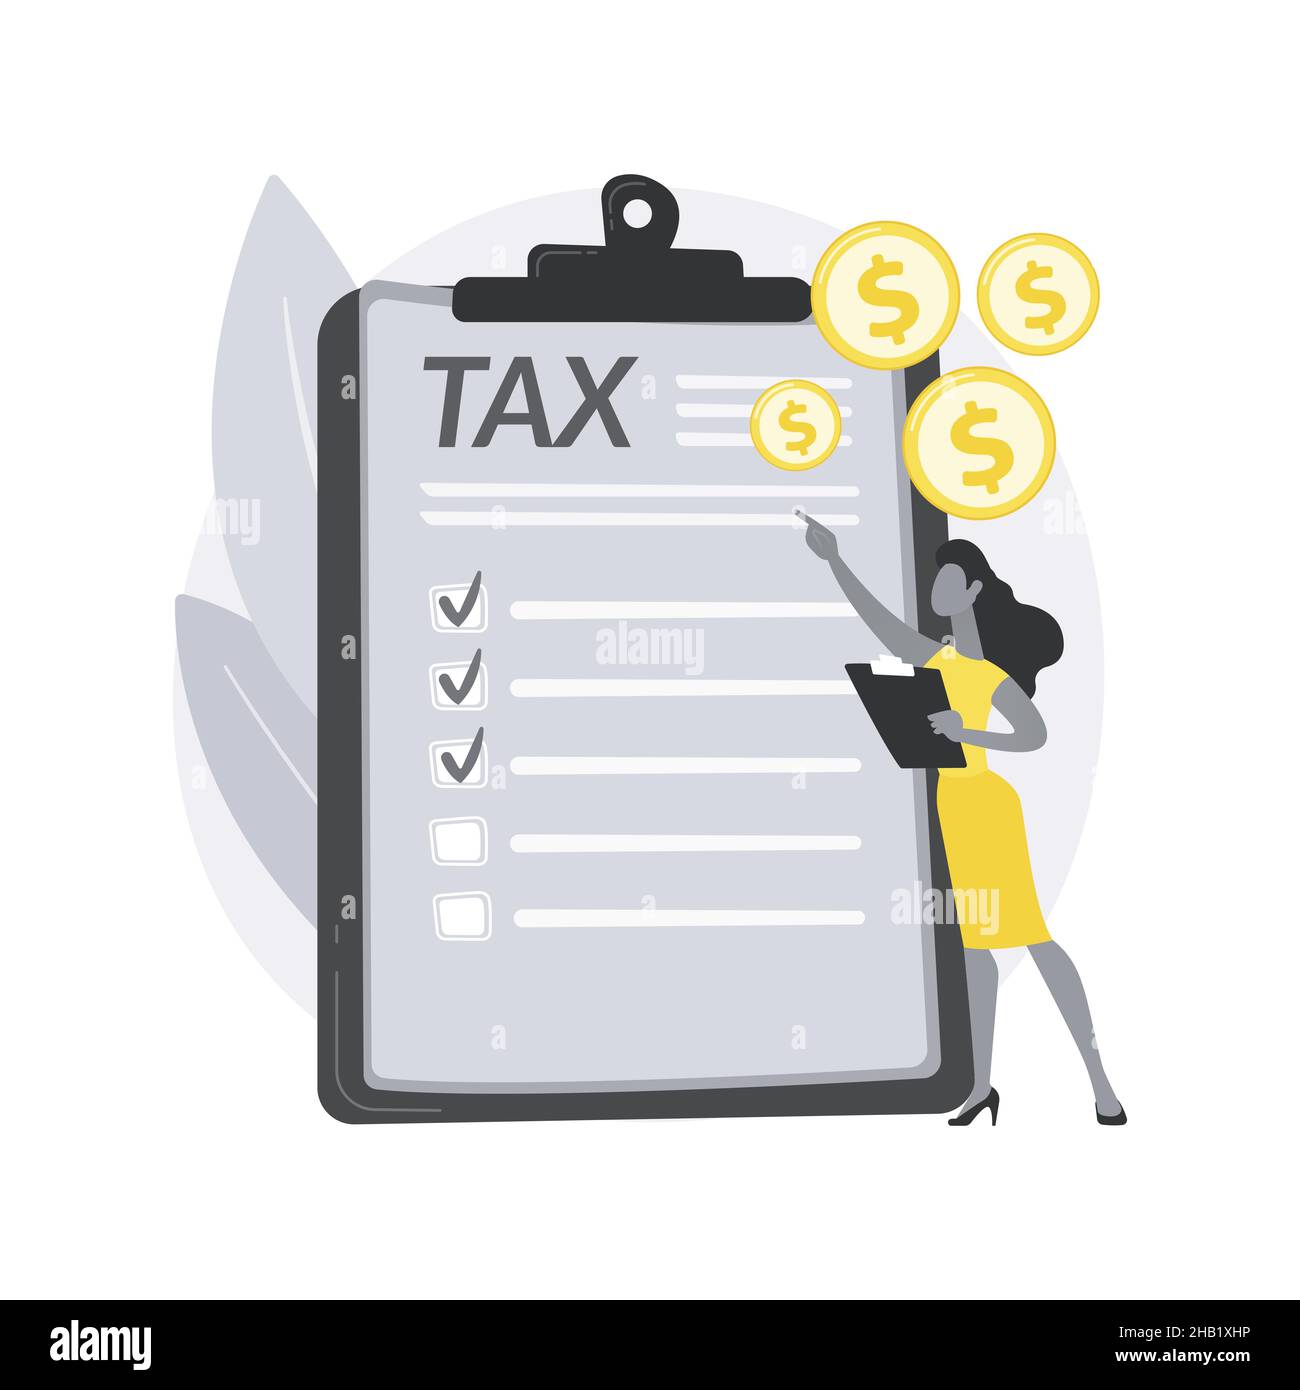 Illustrazione del vettore di concetto astratto dell'imposta sul reddito personale. Illustrazione Vettoriale